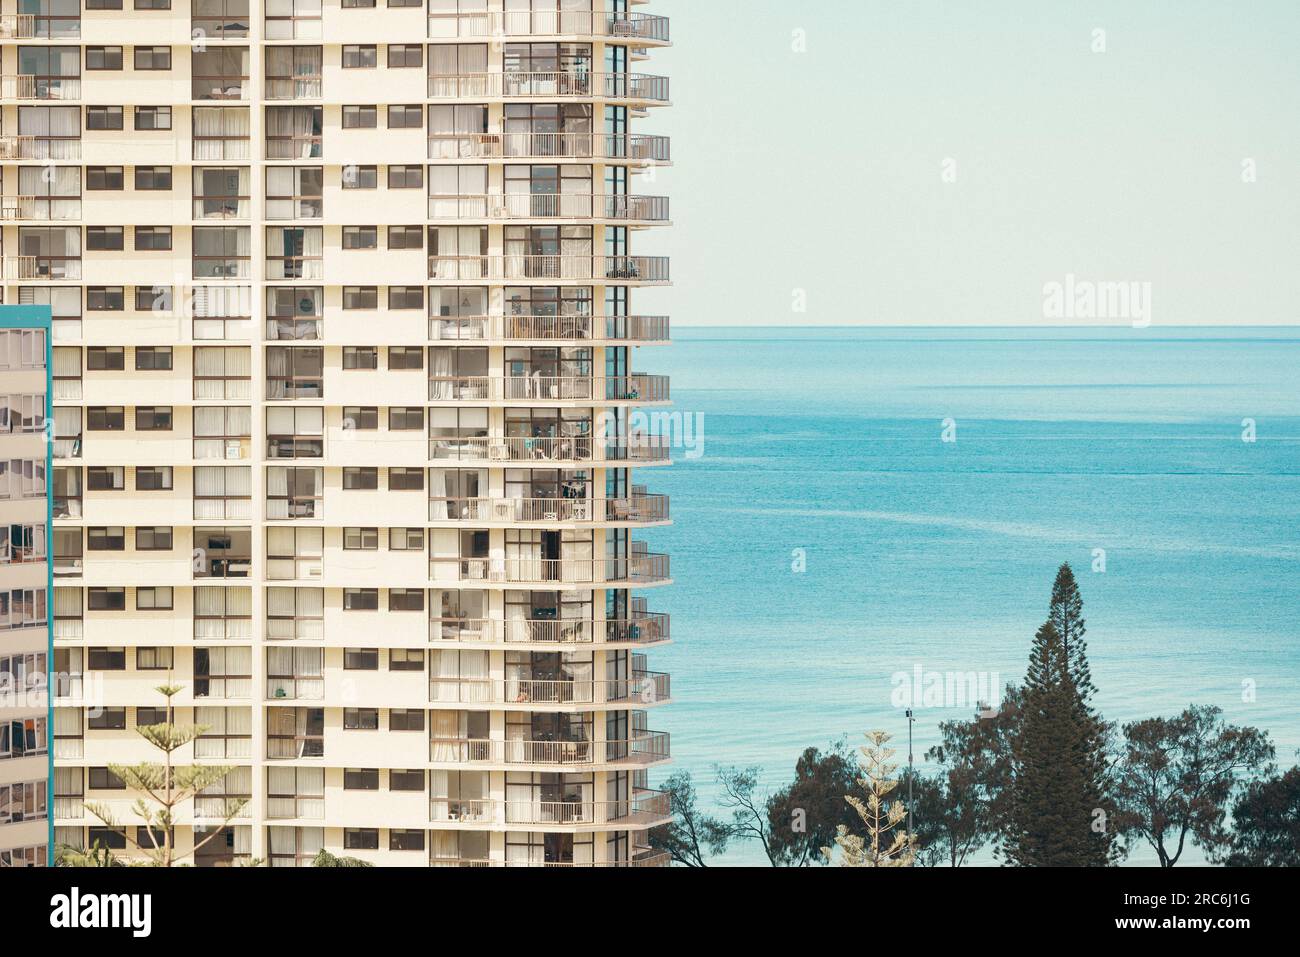 Sezione di un alto edificio di appartamenti vicino alla spiaggia nella città di mare. Surfers Paradise, Queensland, Australia Foto Stock